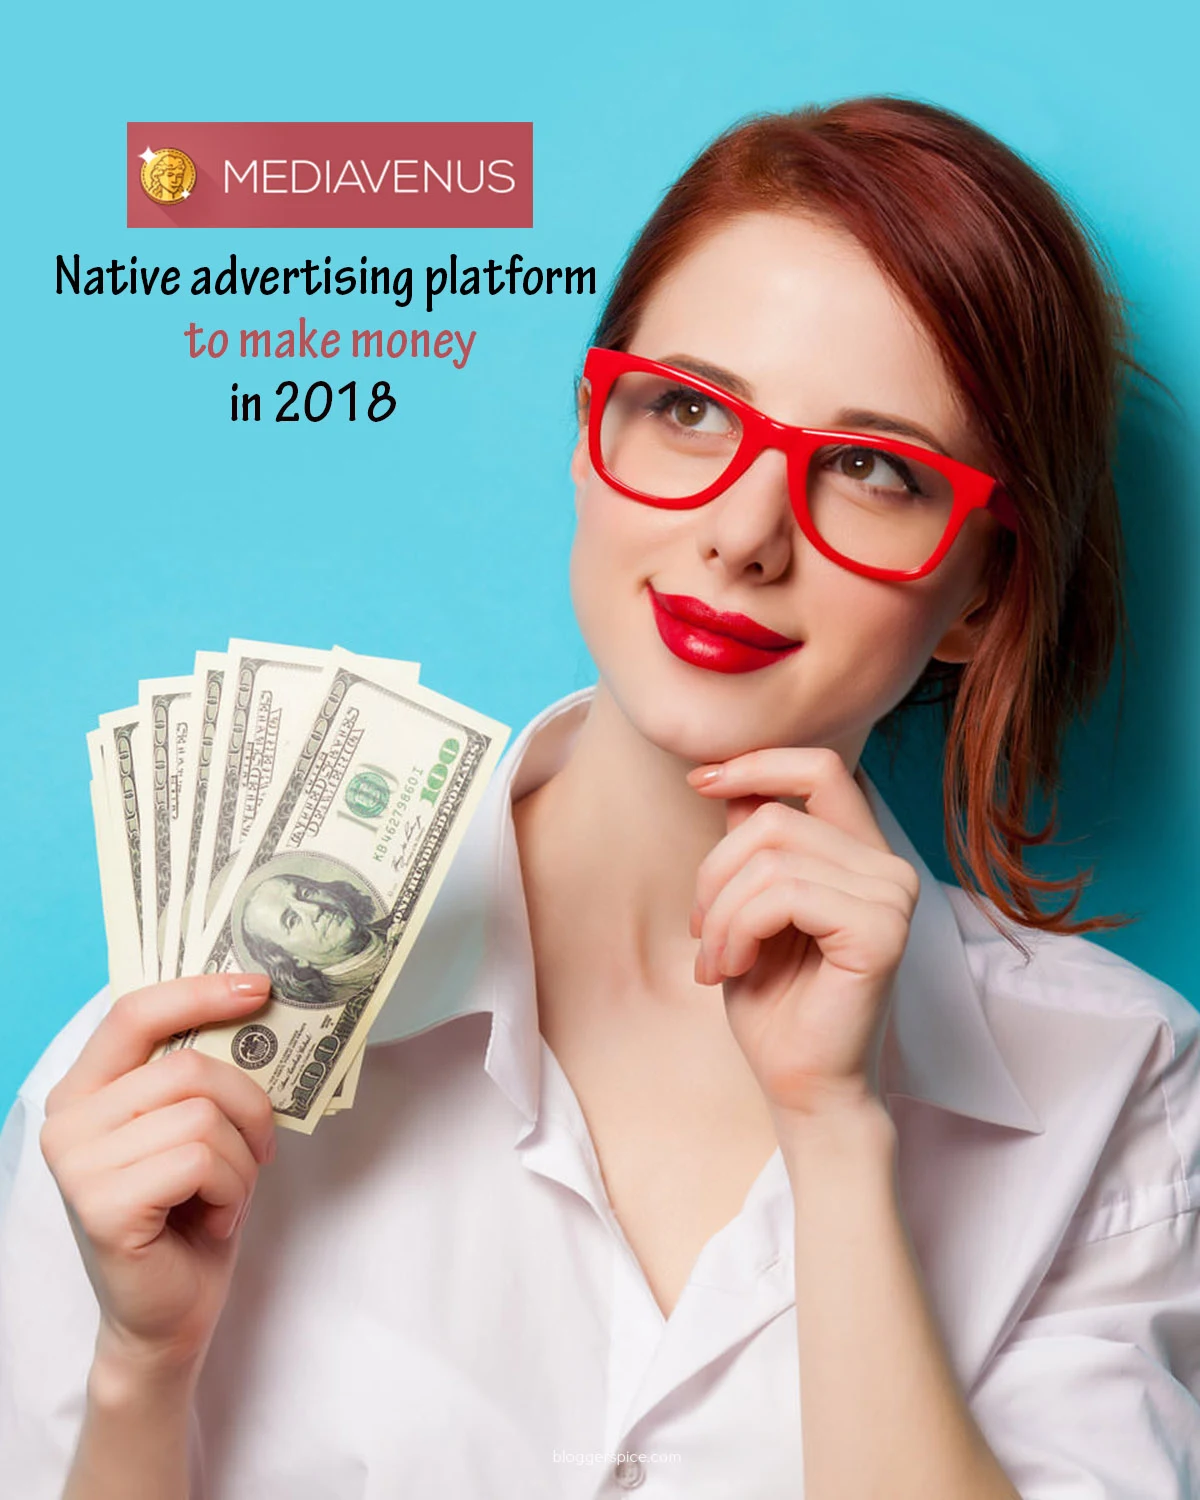 MediaVenus- native advertising platform to make money in 2018